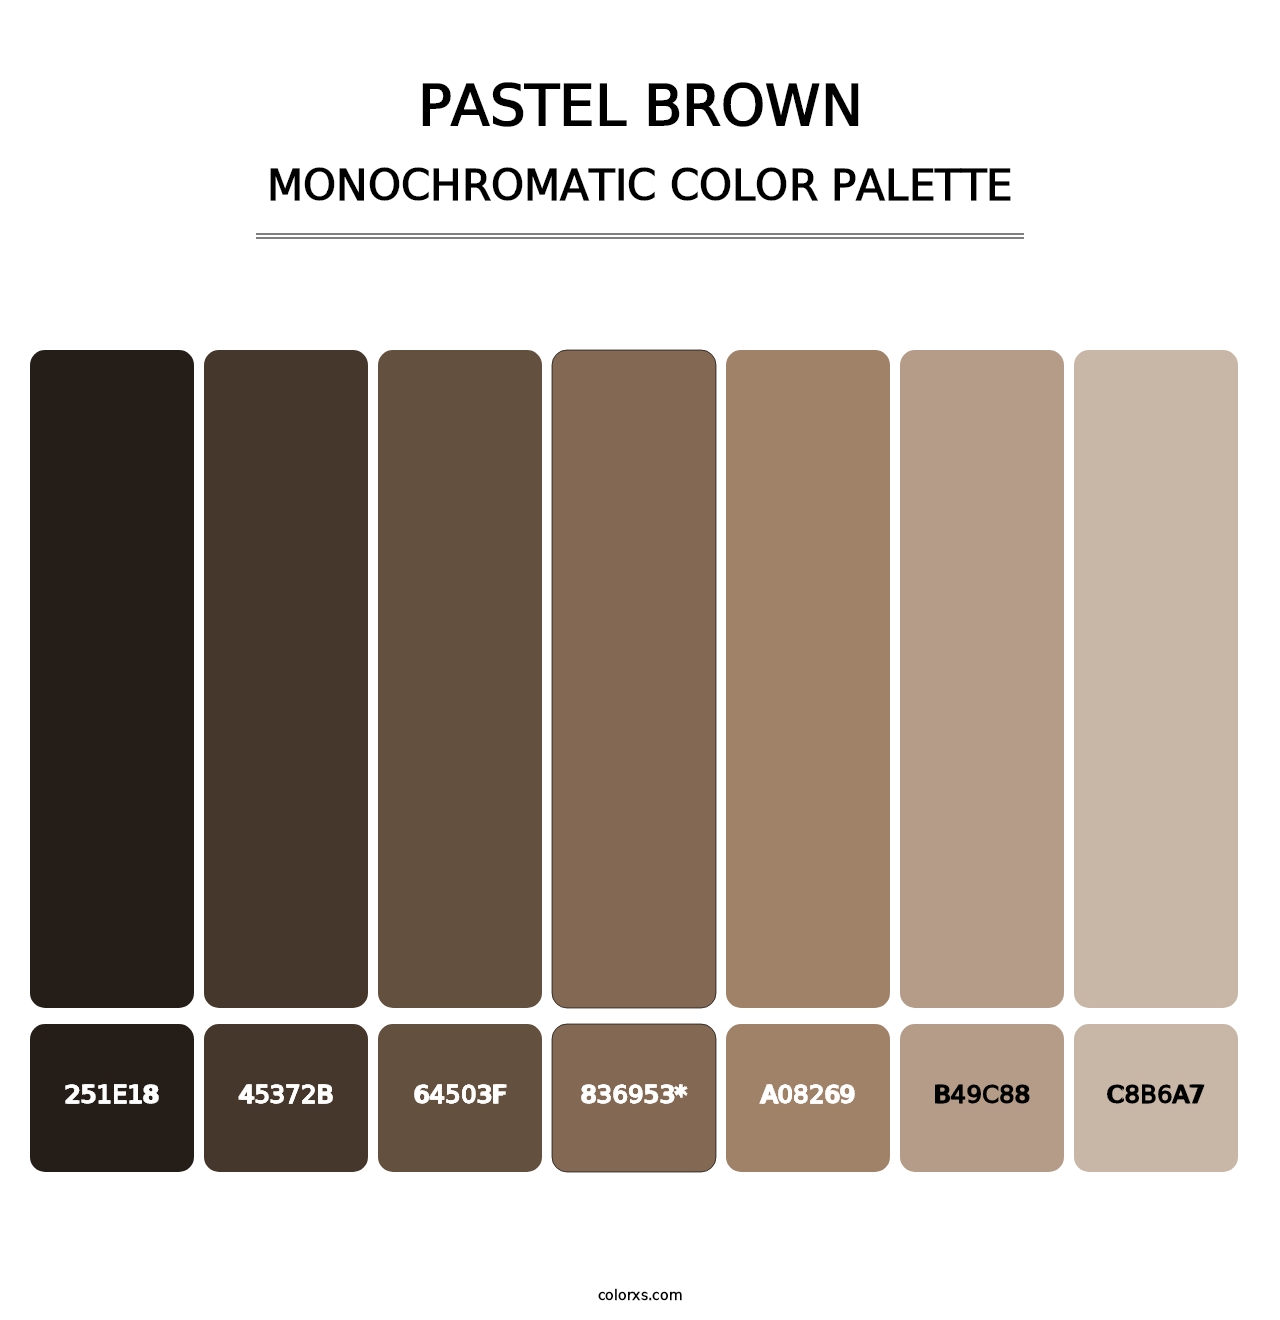 Pastel Brown - Monochromatic Color Palette